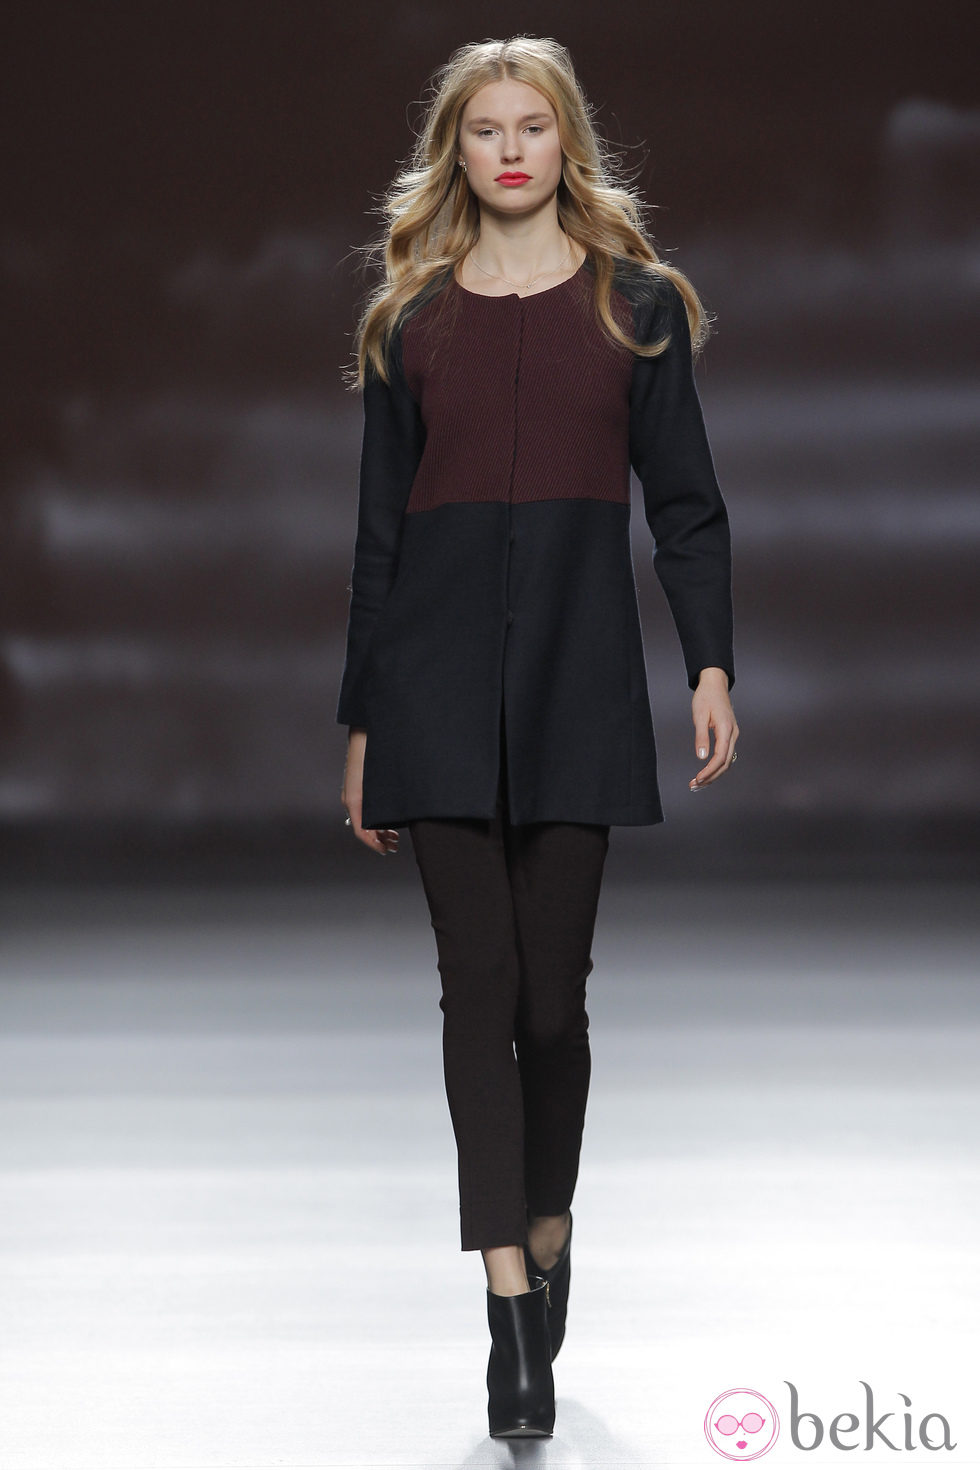 Chaqueta bicolor de la colección otoño/invierno 2013/2014 de Sita Murt en Madrid Fashion Week